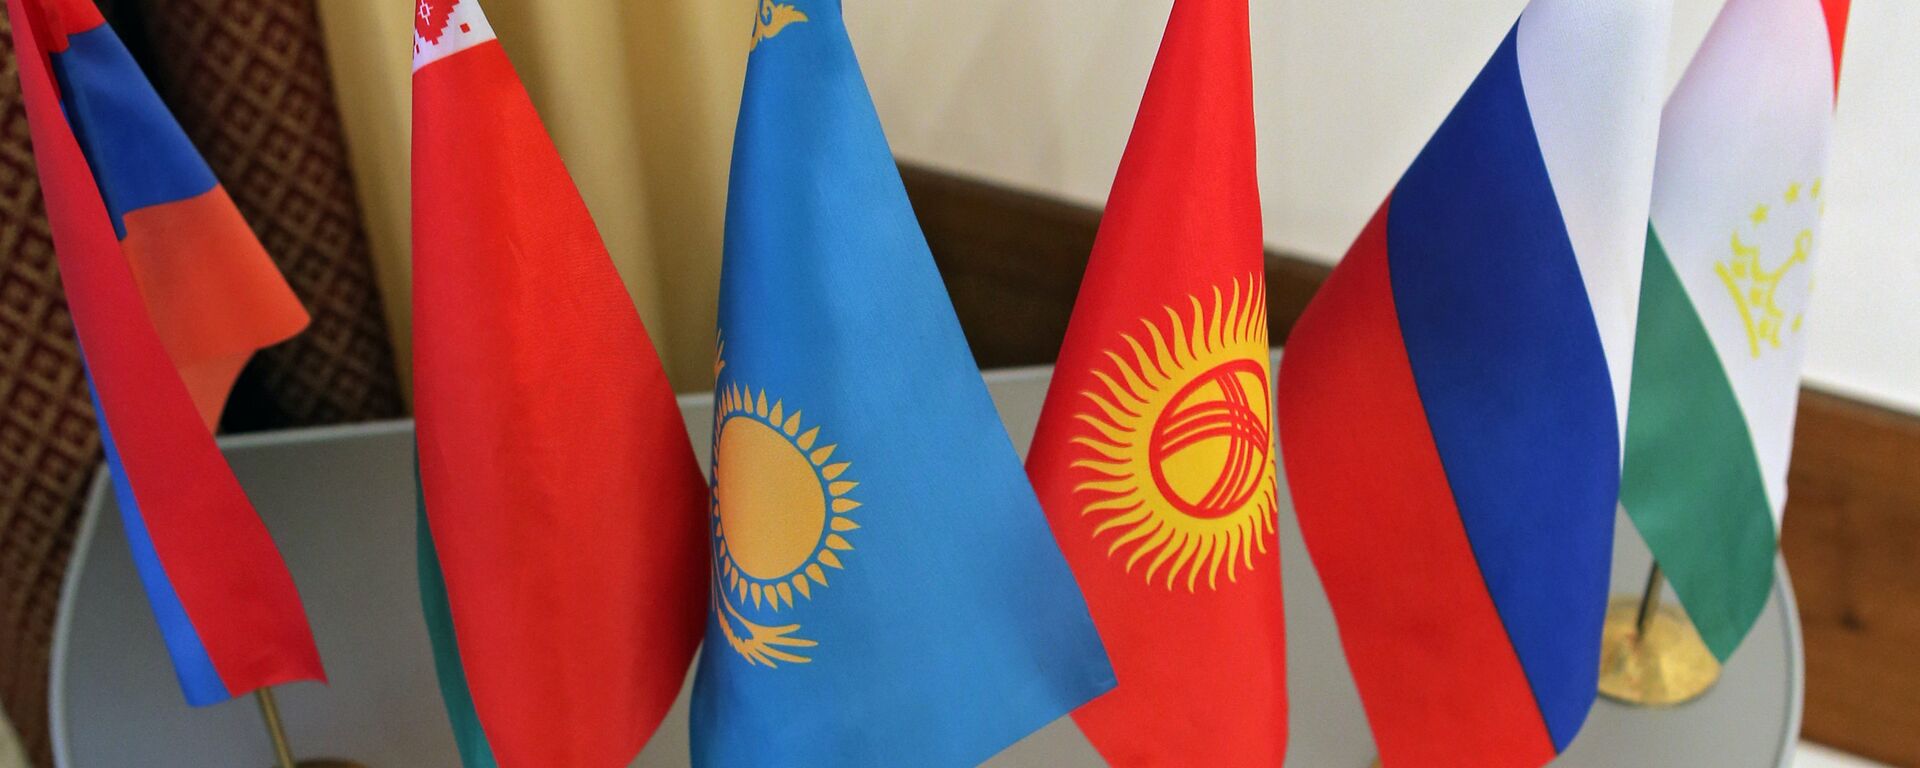 Флаги стран участниц Шанхайской организации сотрудничества - Sputnik Узбекистан, 1920, 18.03.2021